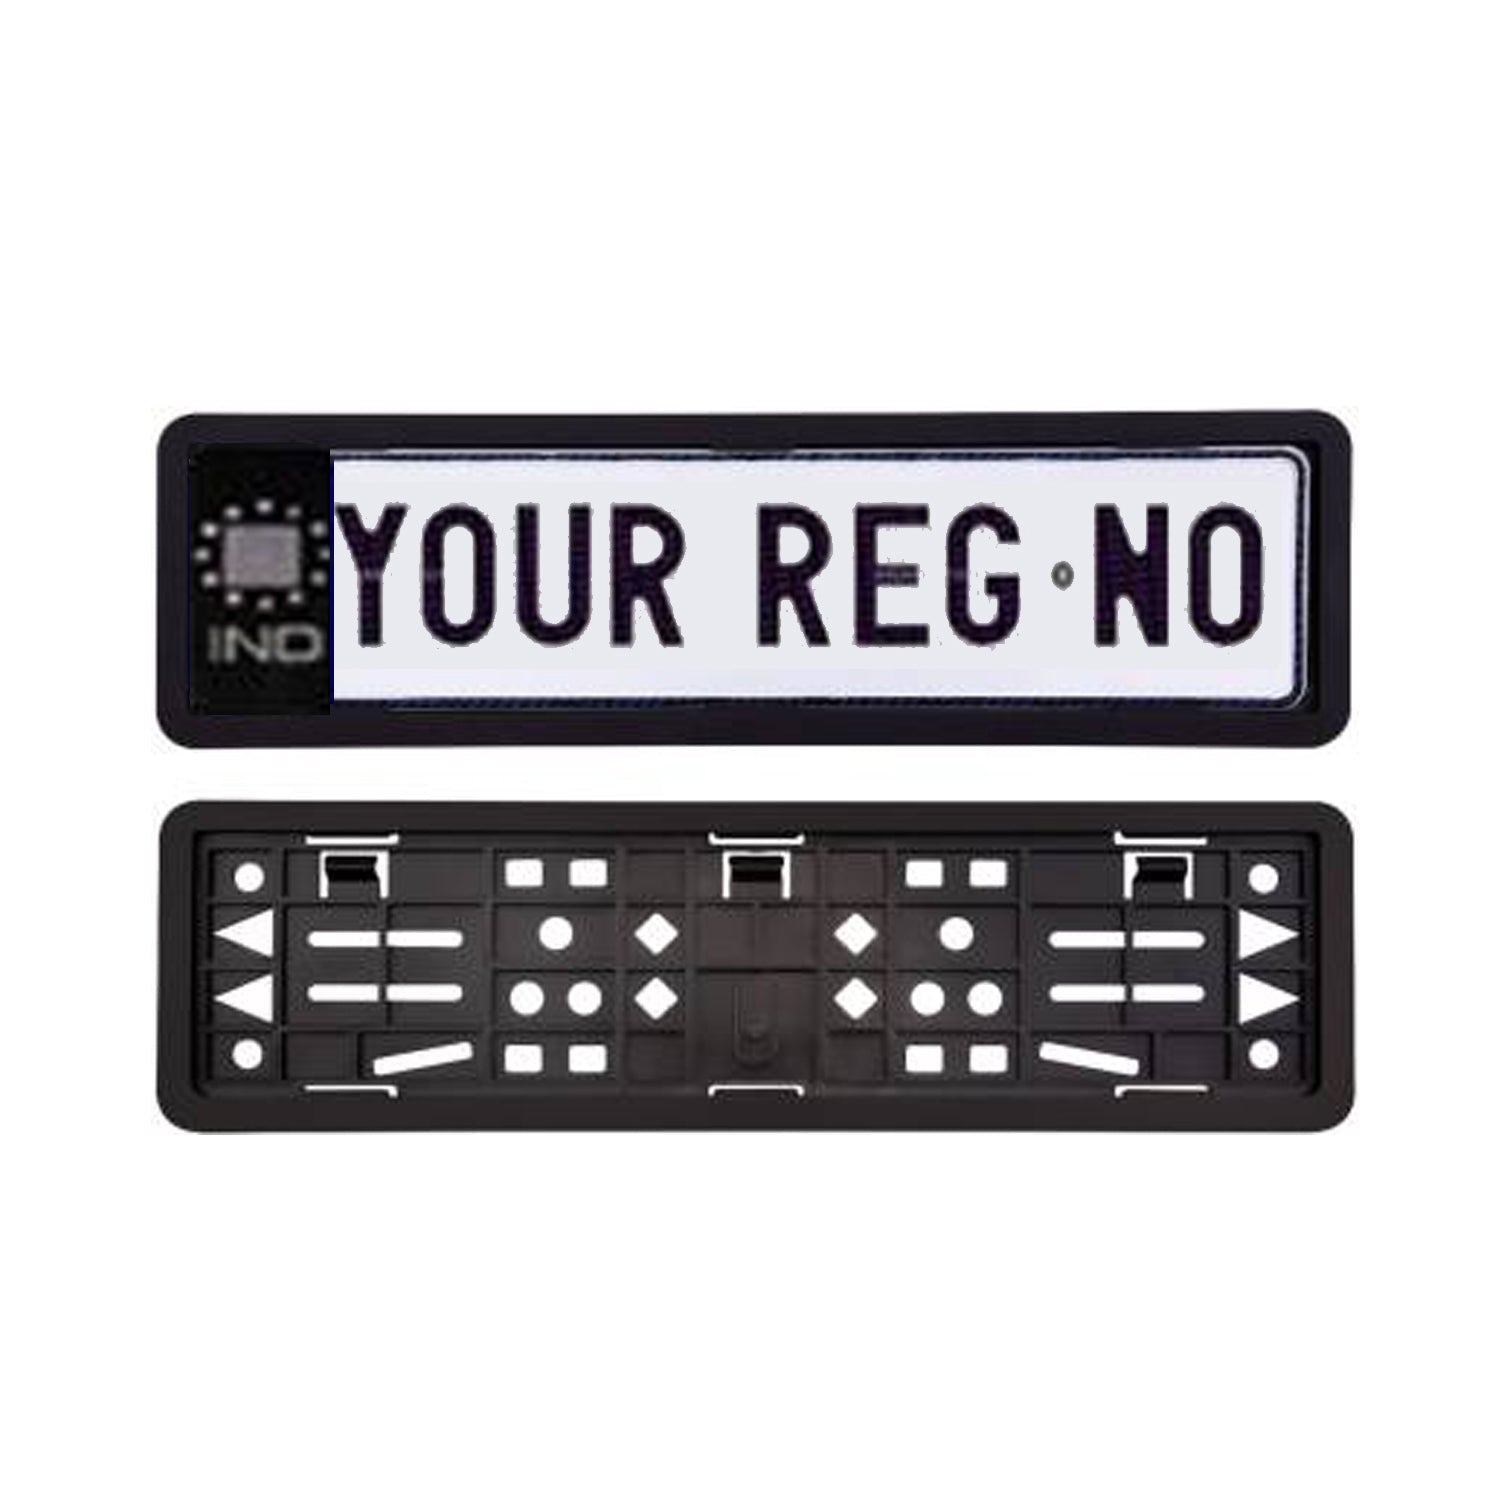 Car Licensed IND Number Plates and Frames (Black)